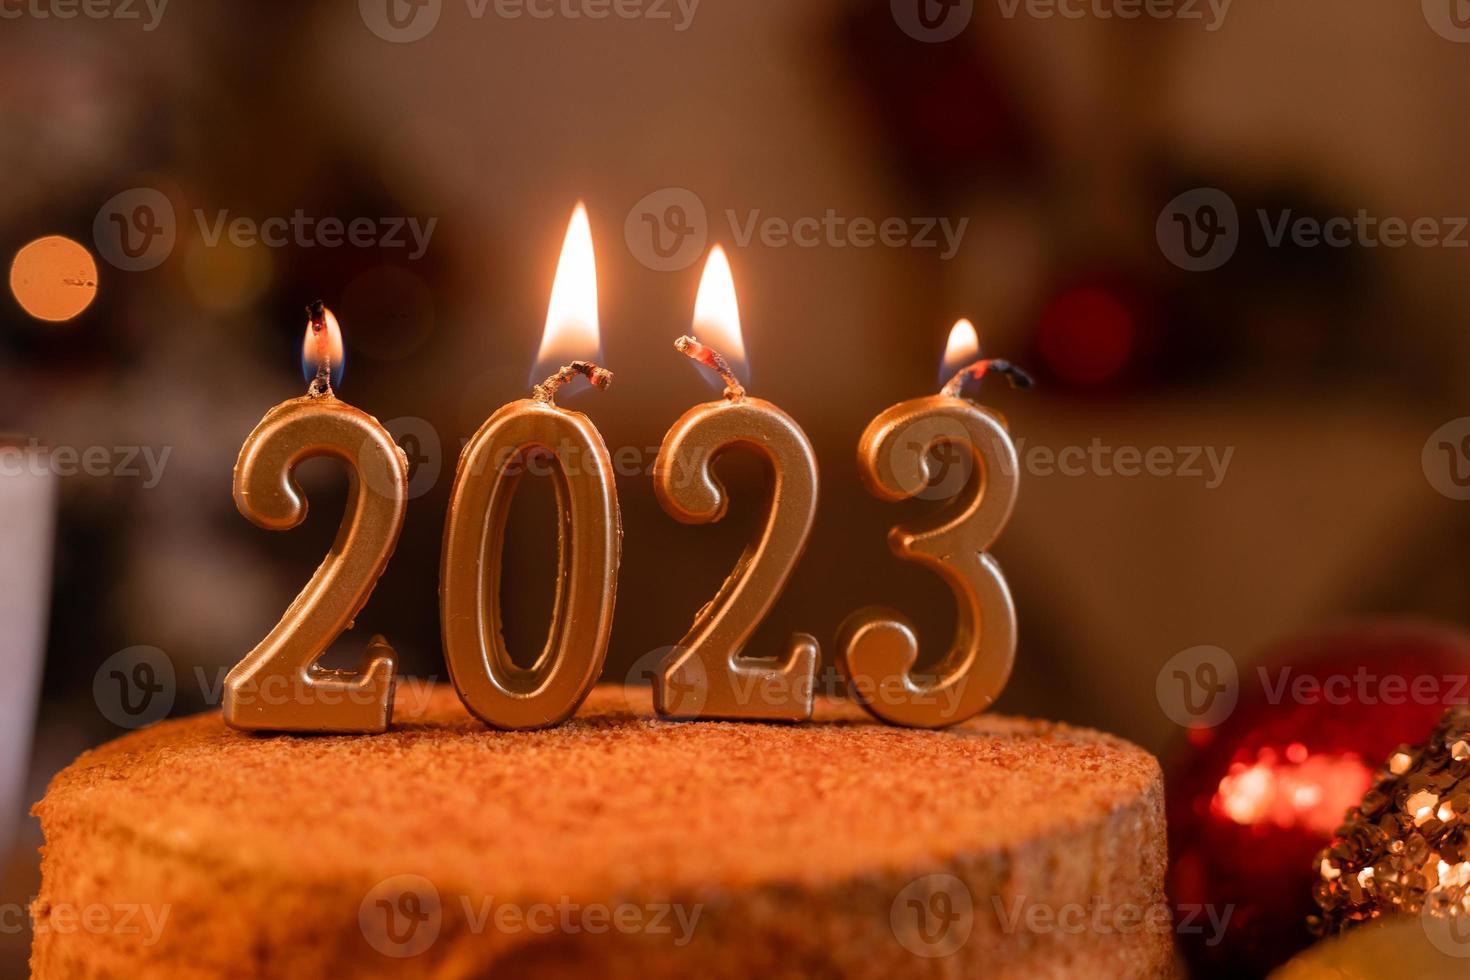 pastel de miel casero en la cocina con velas 2023. acogedor año nuevo en casa. Feliz Navidad. foto de alta calidad